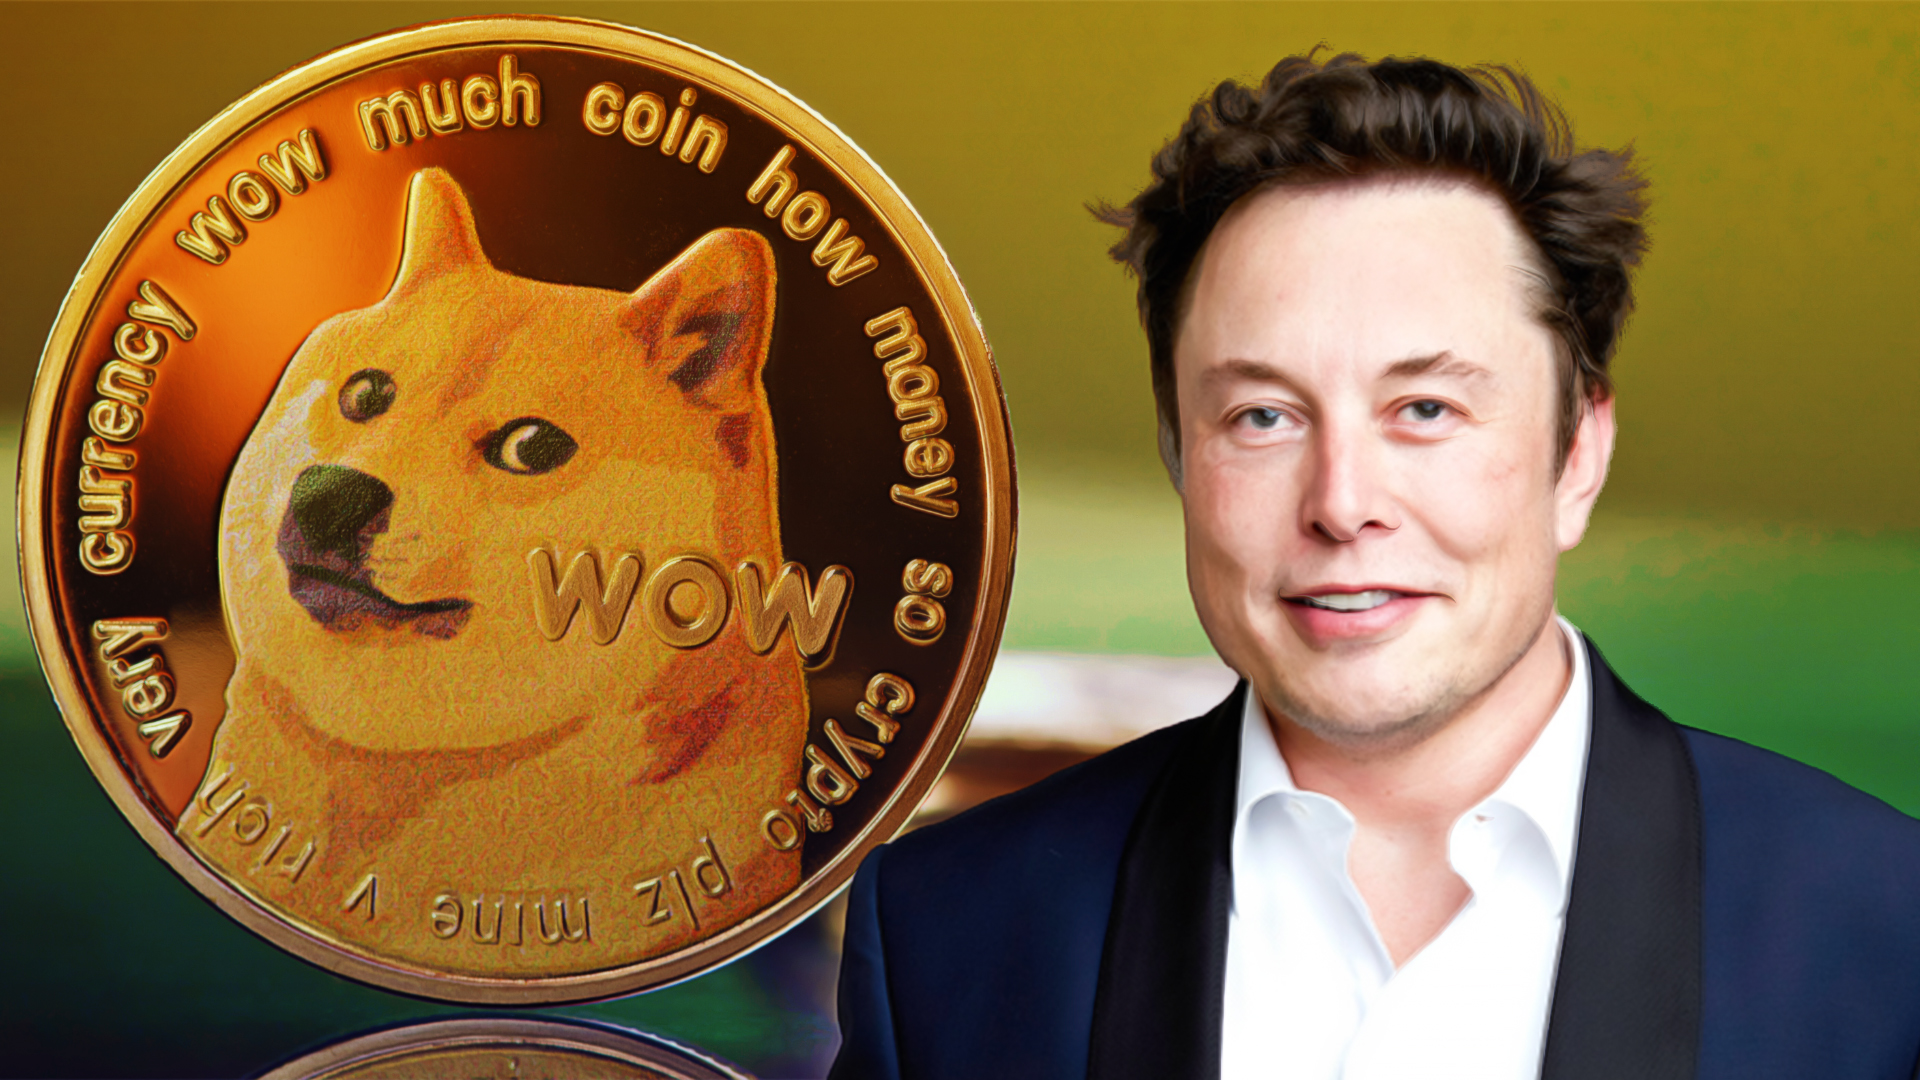 Elon Musk's Biography ft. Dogecoin